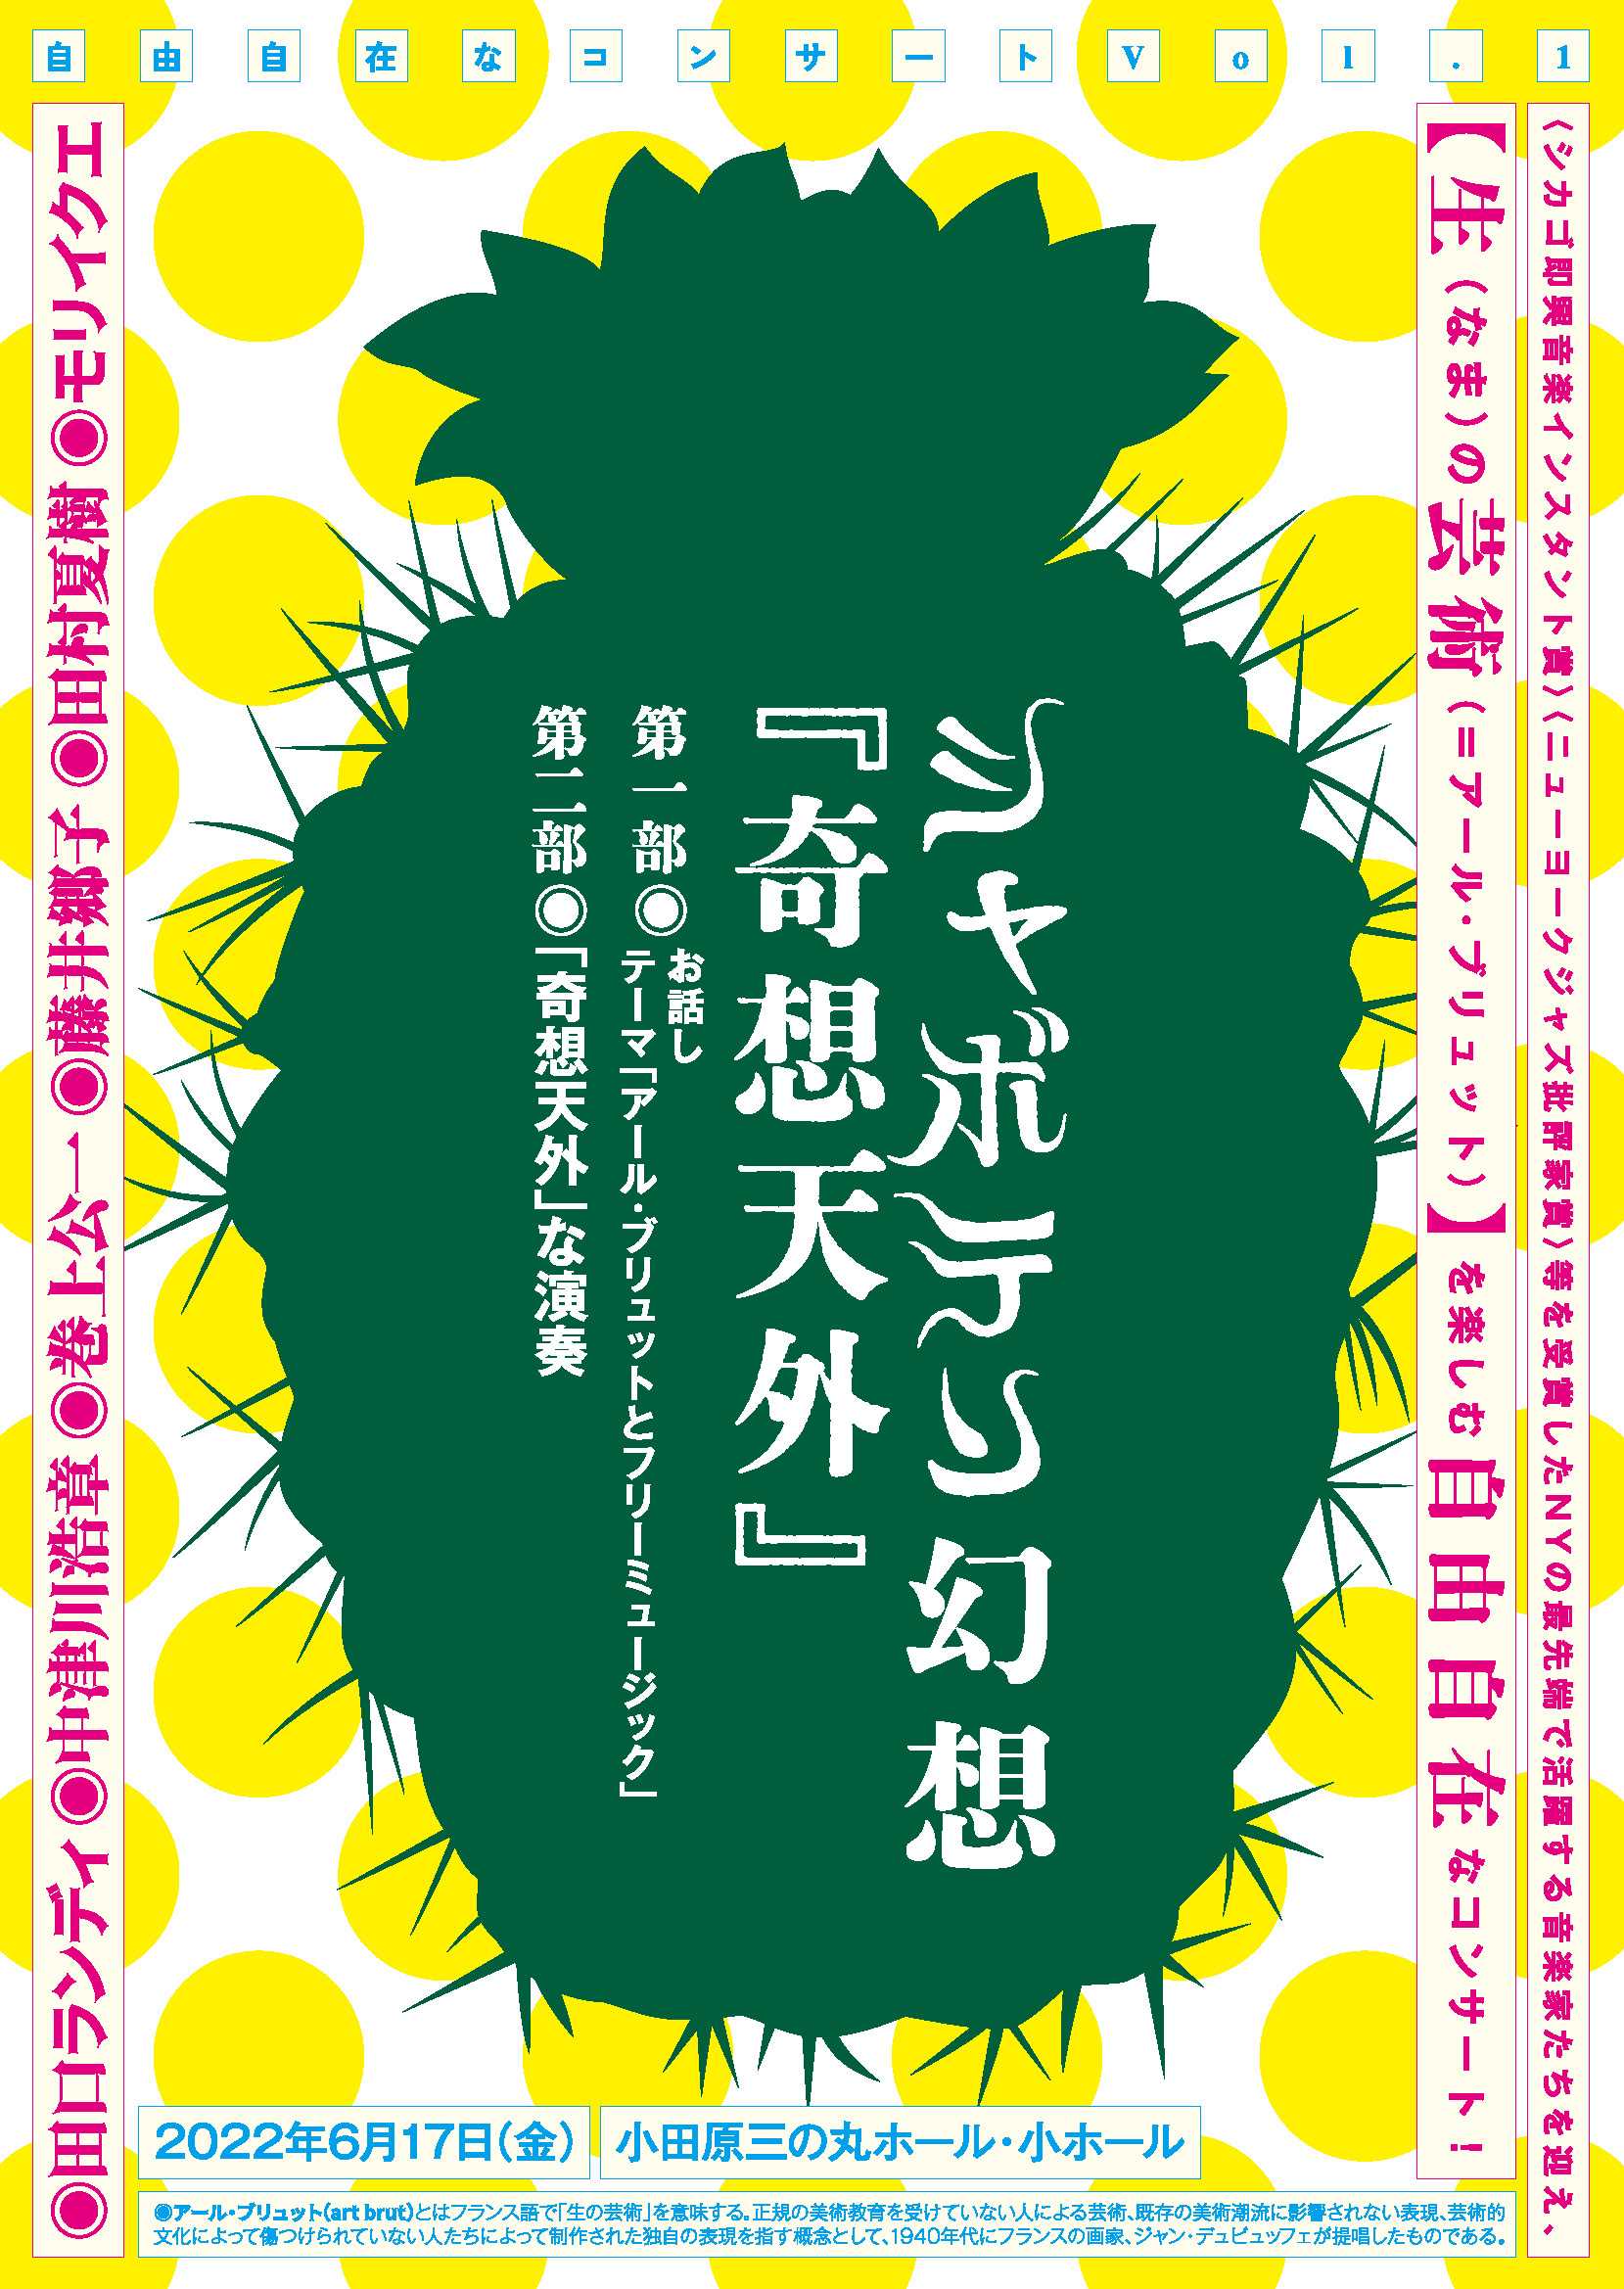 自由自在なコンサート vol.1 シャボテン幻想「奇想天外」